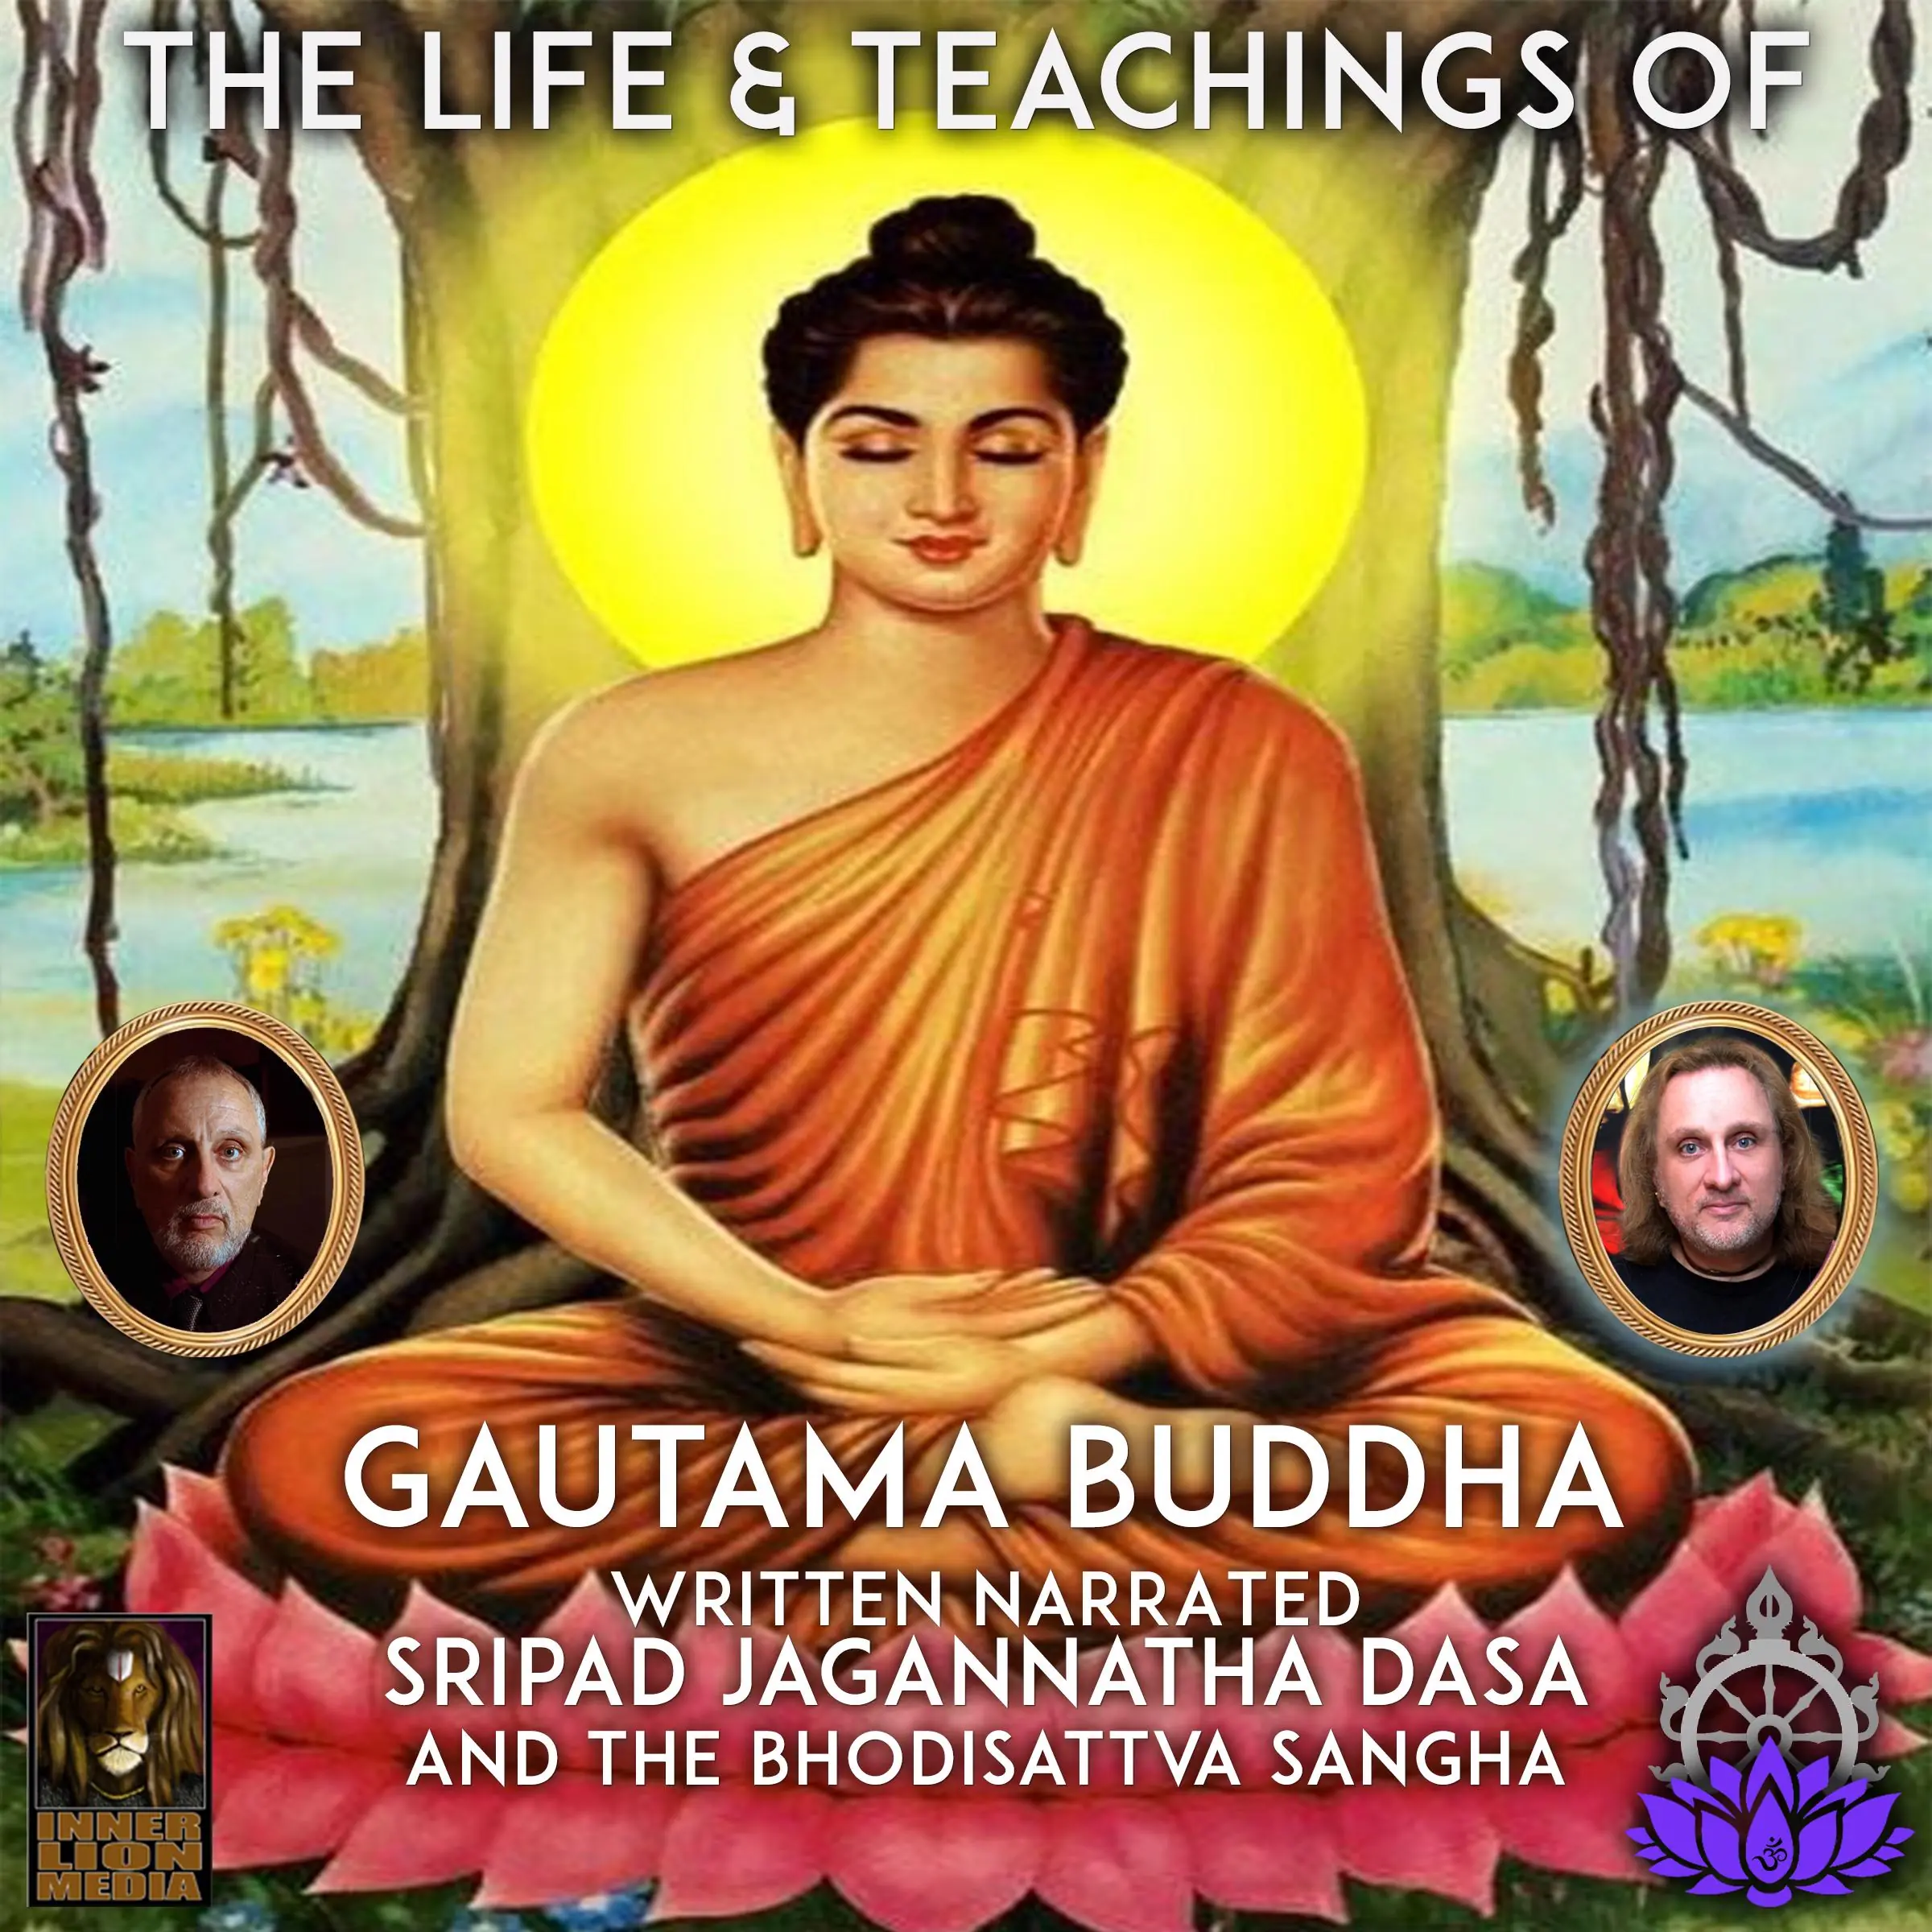 The Life & Teaching Of Gautama Buddha Audiobook by Sripad Jagannatha Dasa And The Bhodisattva Sangha